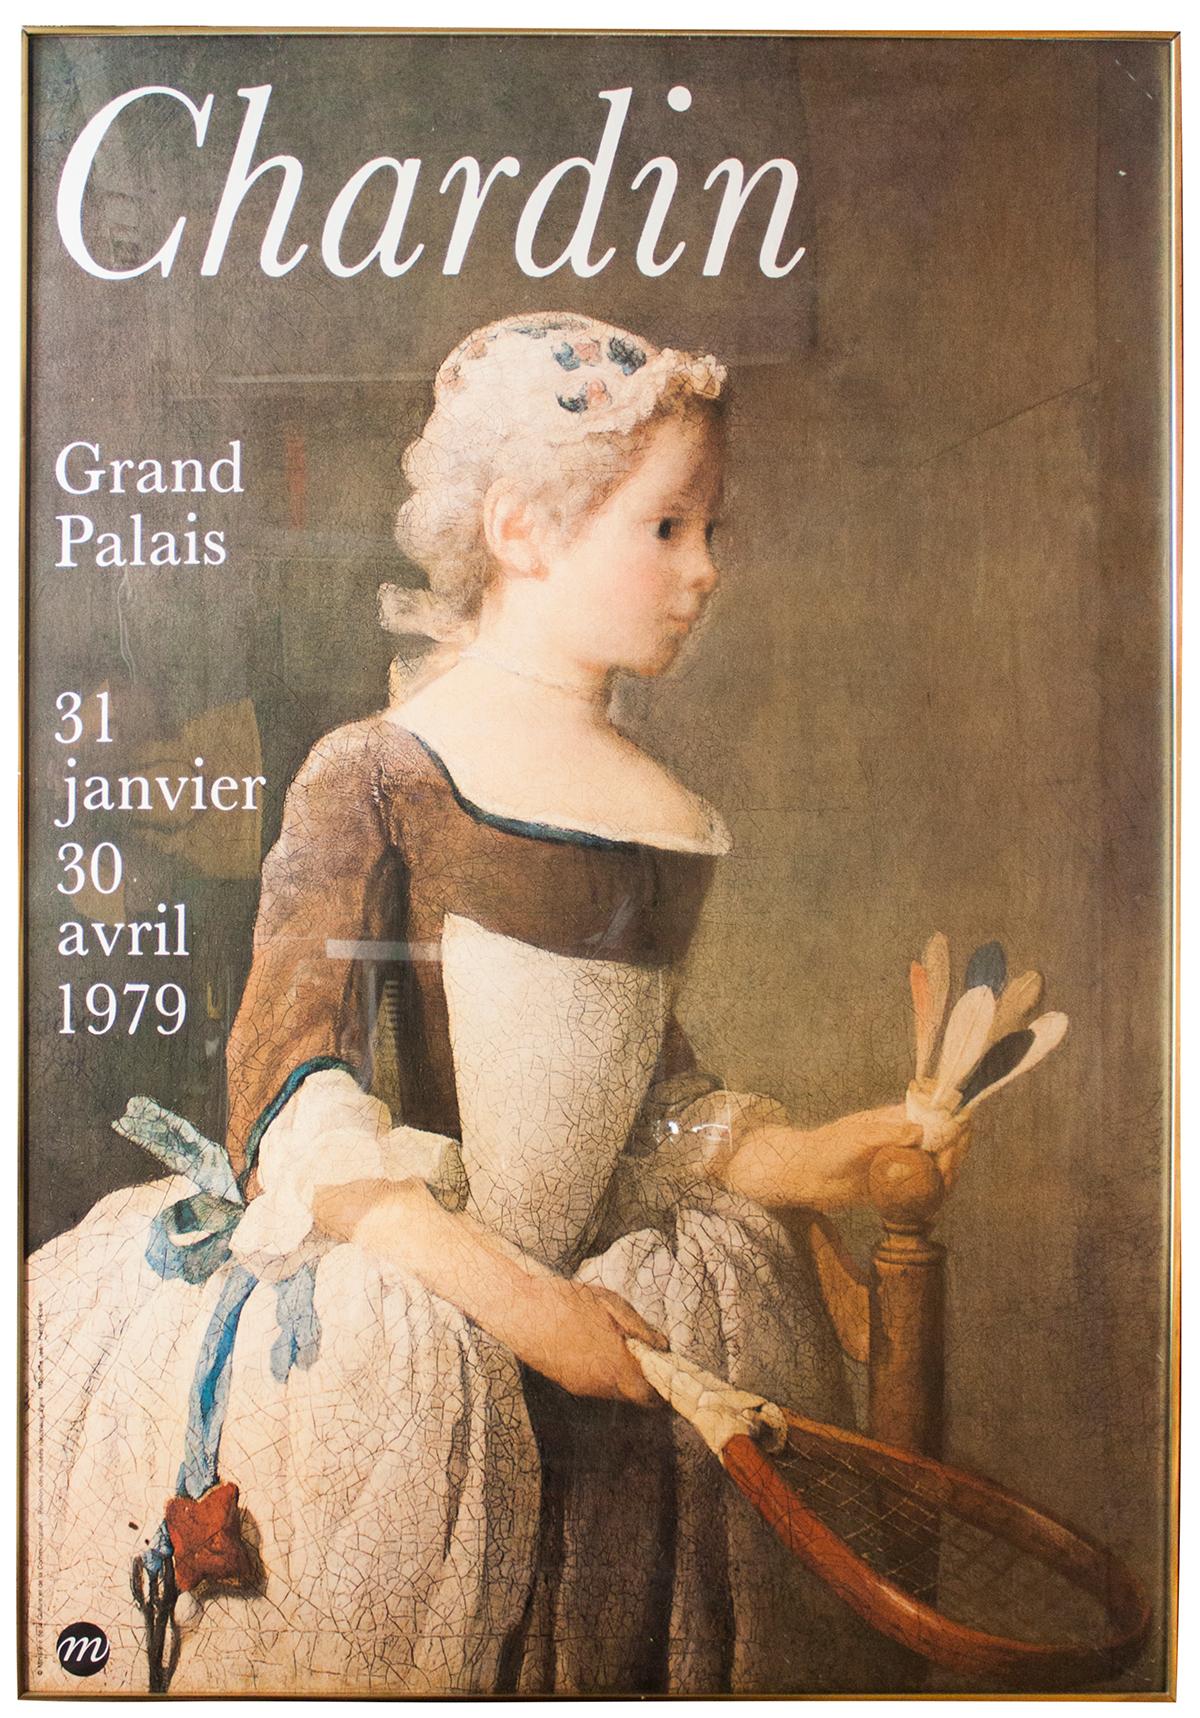 La dernière grande manifestation consacrée à Chardin a eu lieu en 1979 au Grand Palais à Paris de "La fille à la raquette et au volant". Prix spéciaux pour la livraison. 
